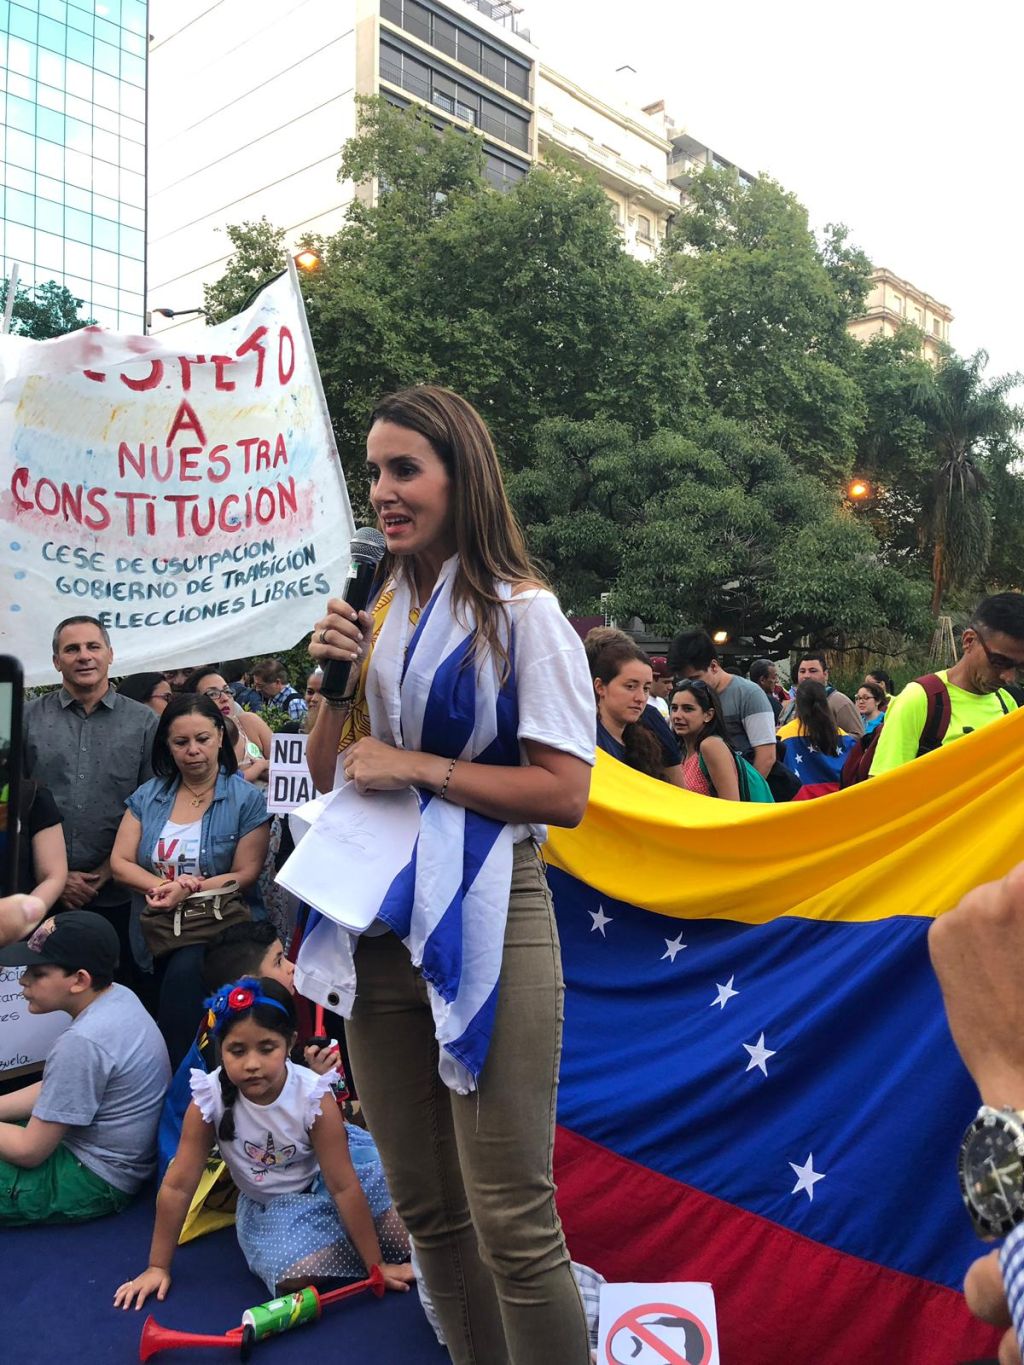 Caro Ache de pie,con la bandera uruguaya al cuello. De fondo, gente sentada en el piso, y una bandera de Venezuela, y carteles.